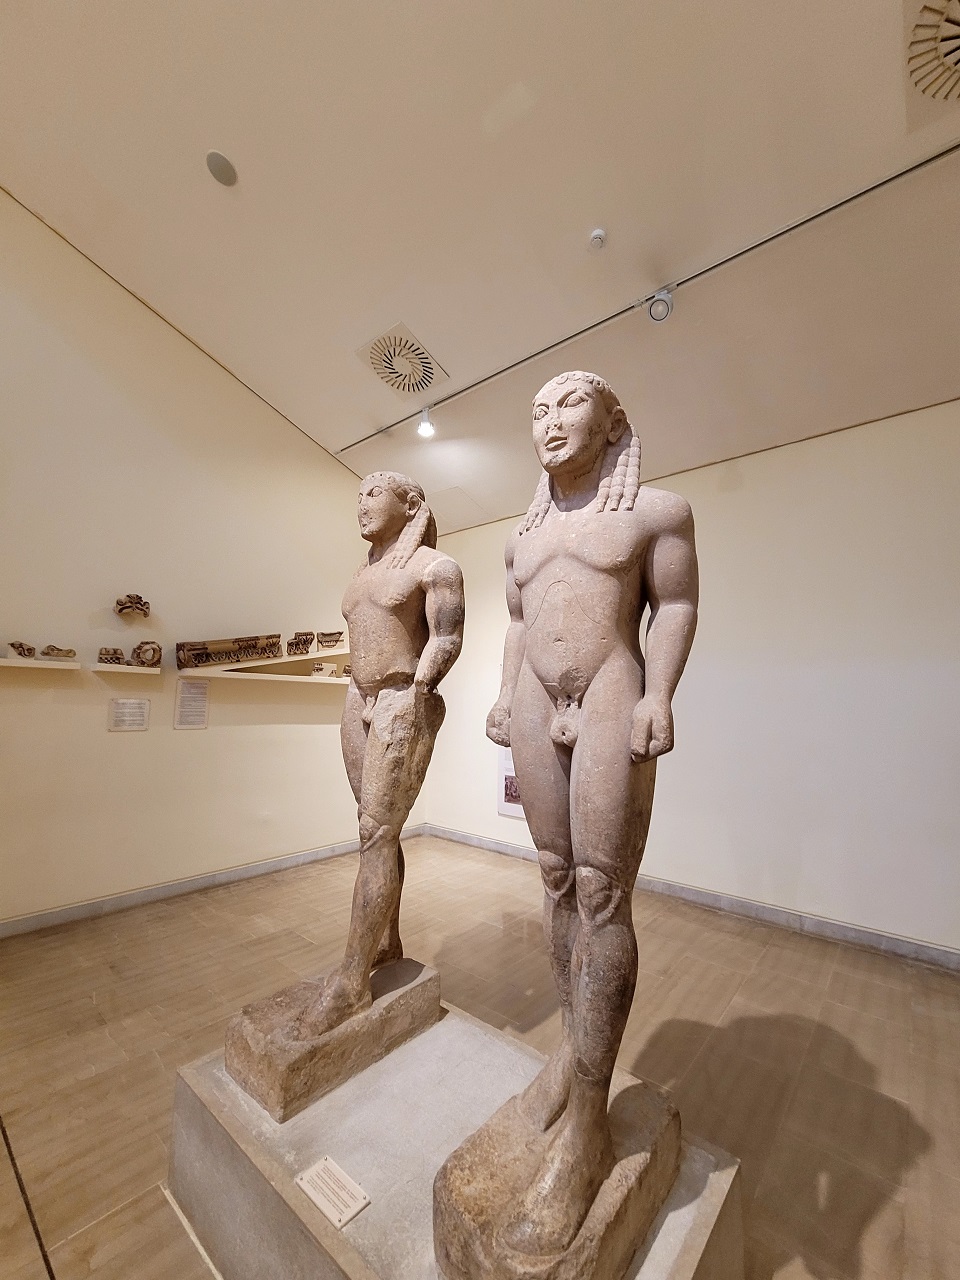 델피 고고학박물관에 있는 두 명의 거대한 조각상